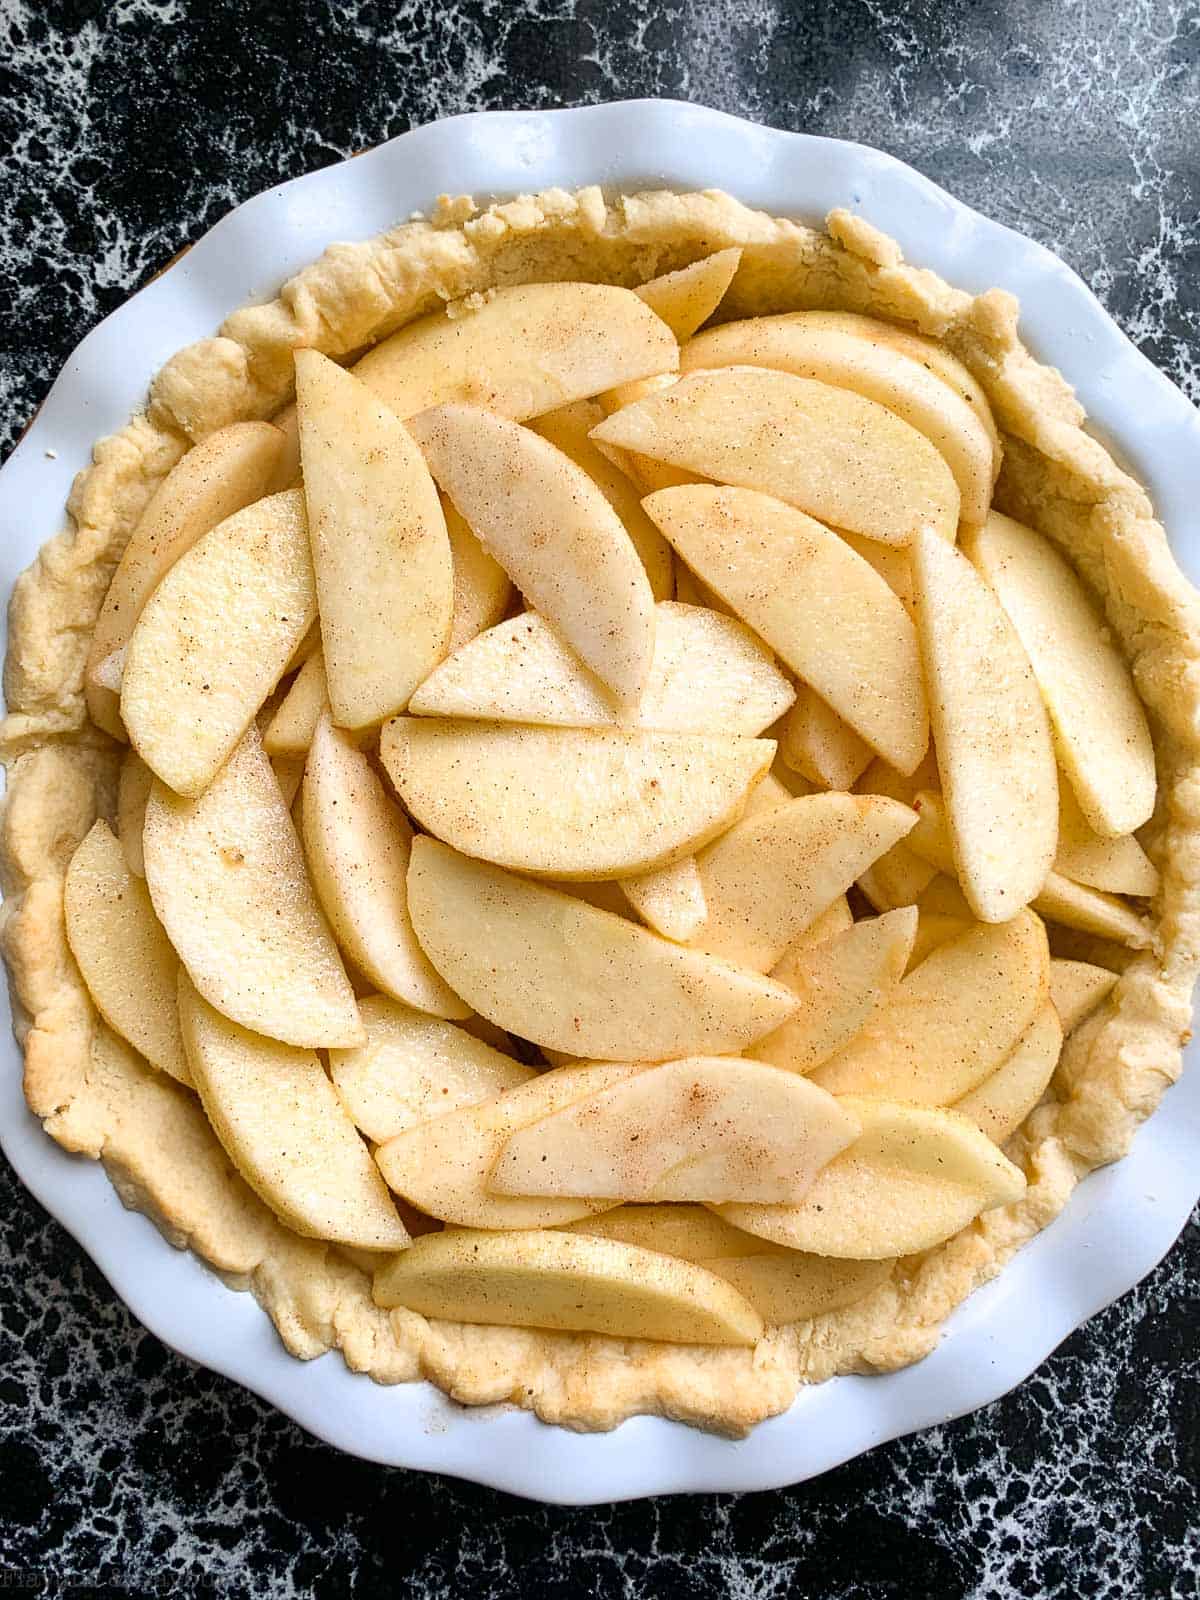 Sliced apples in pie crust.